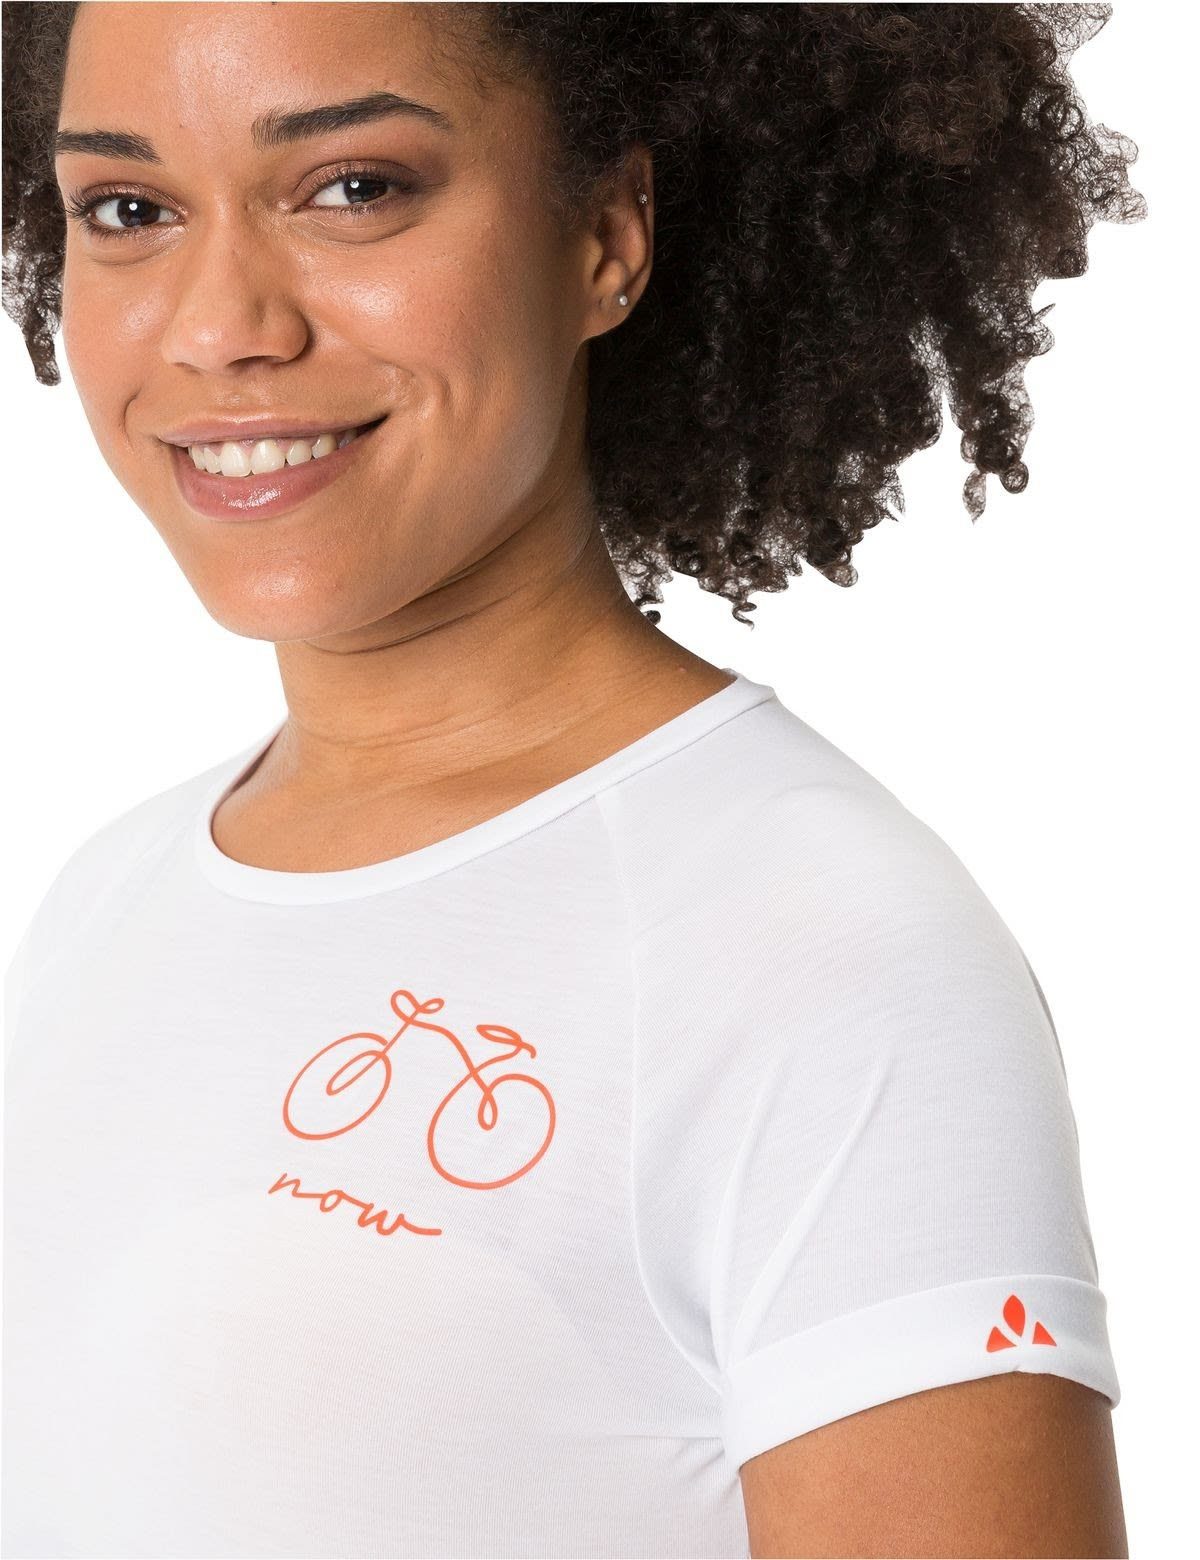 VAUDE T-Shirt Vaude Womens 2 White Kurzarm-Shirt T-shirt Damen Cyclist